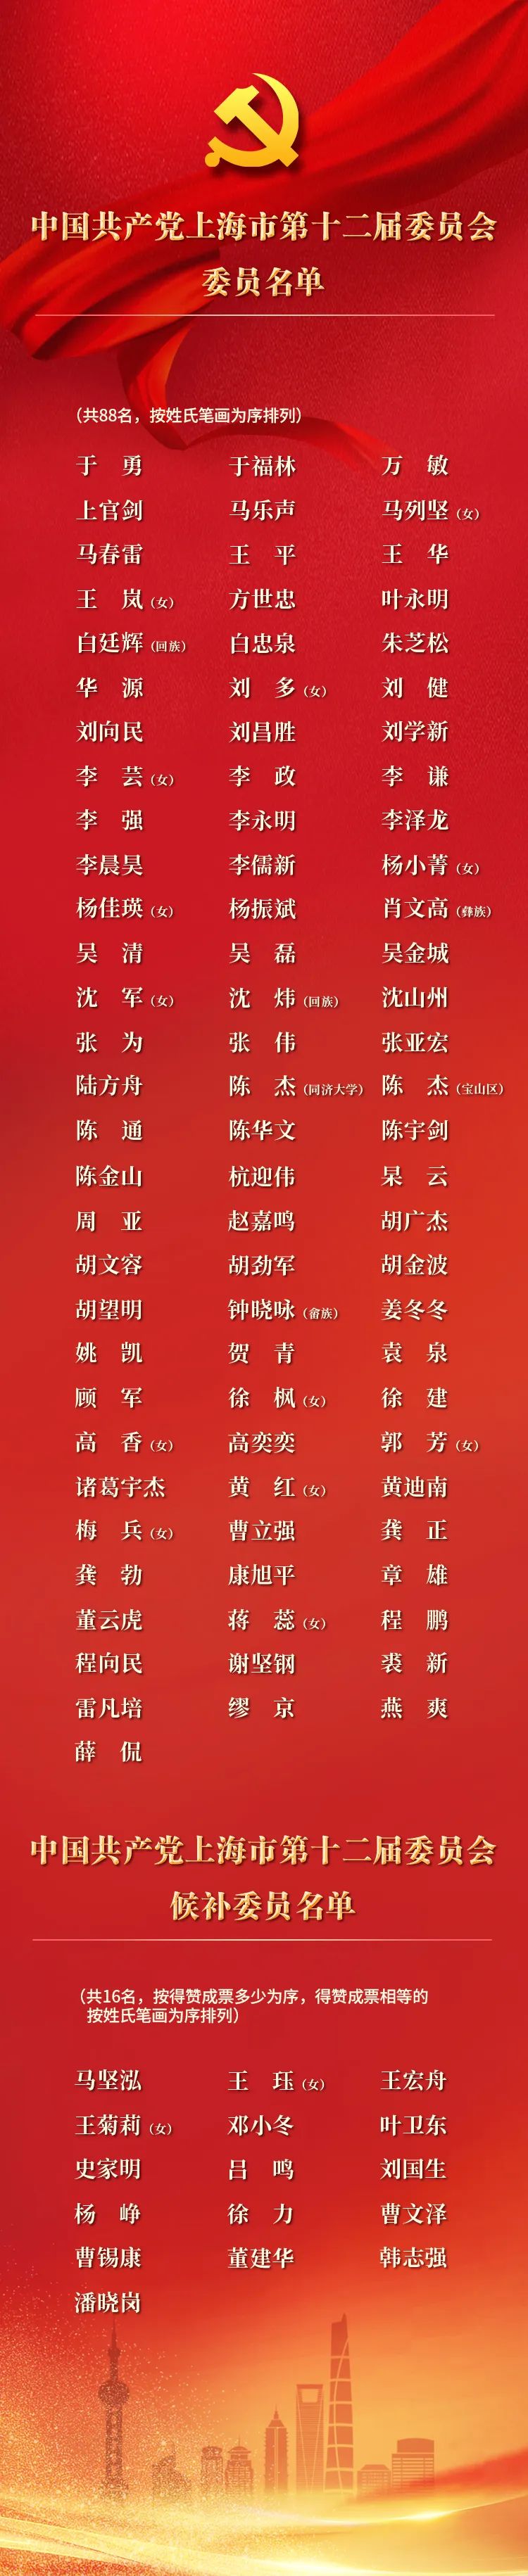 中共上海市第十二届委员会委员名单、候补委员名单.jpg